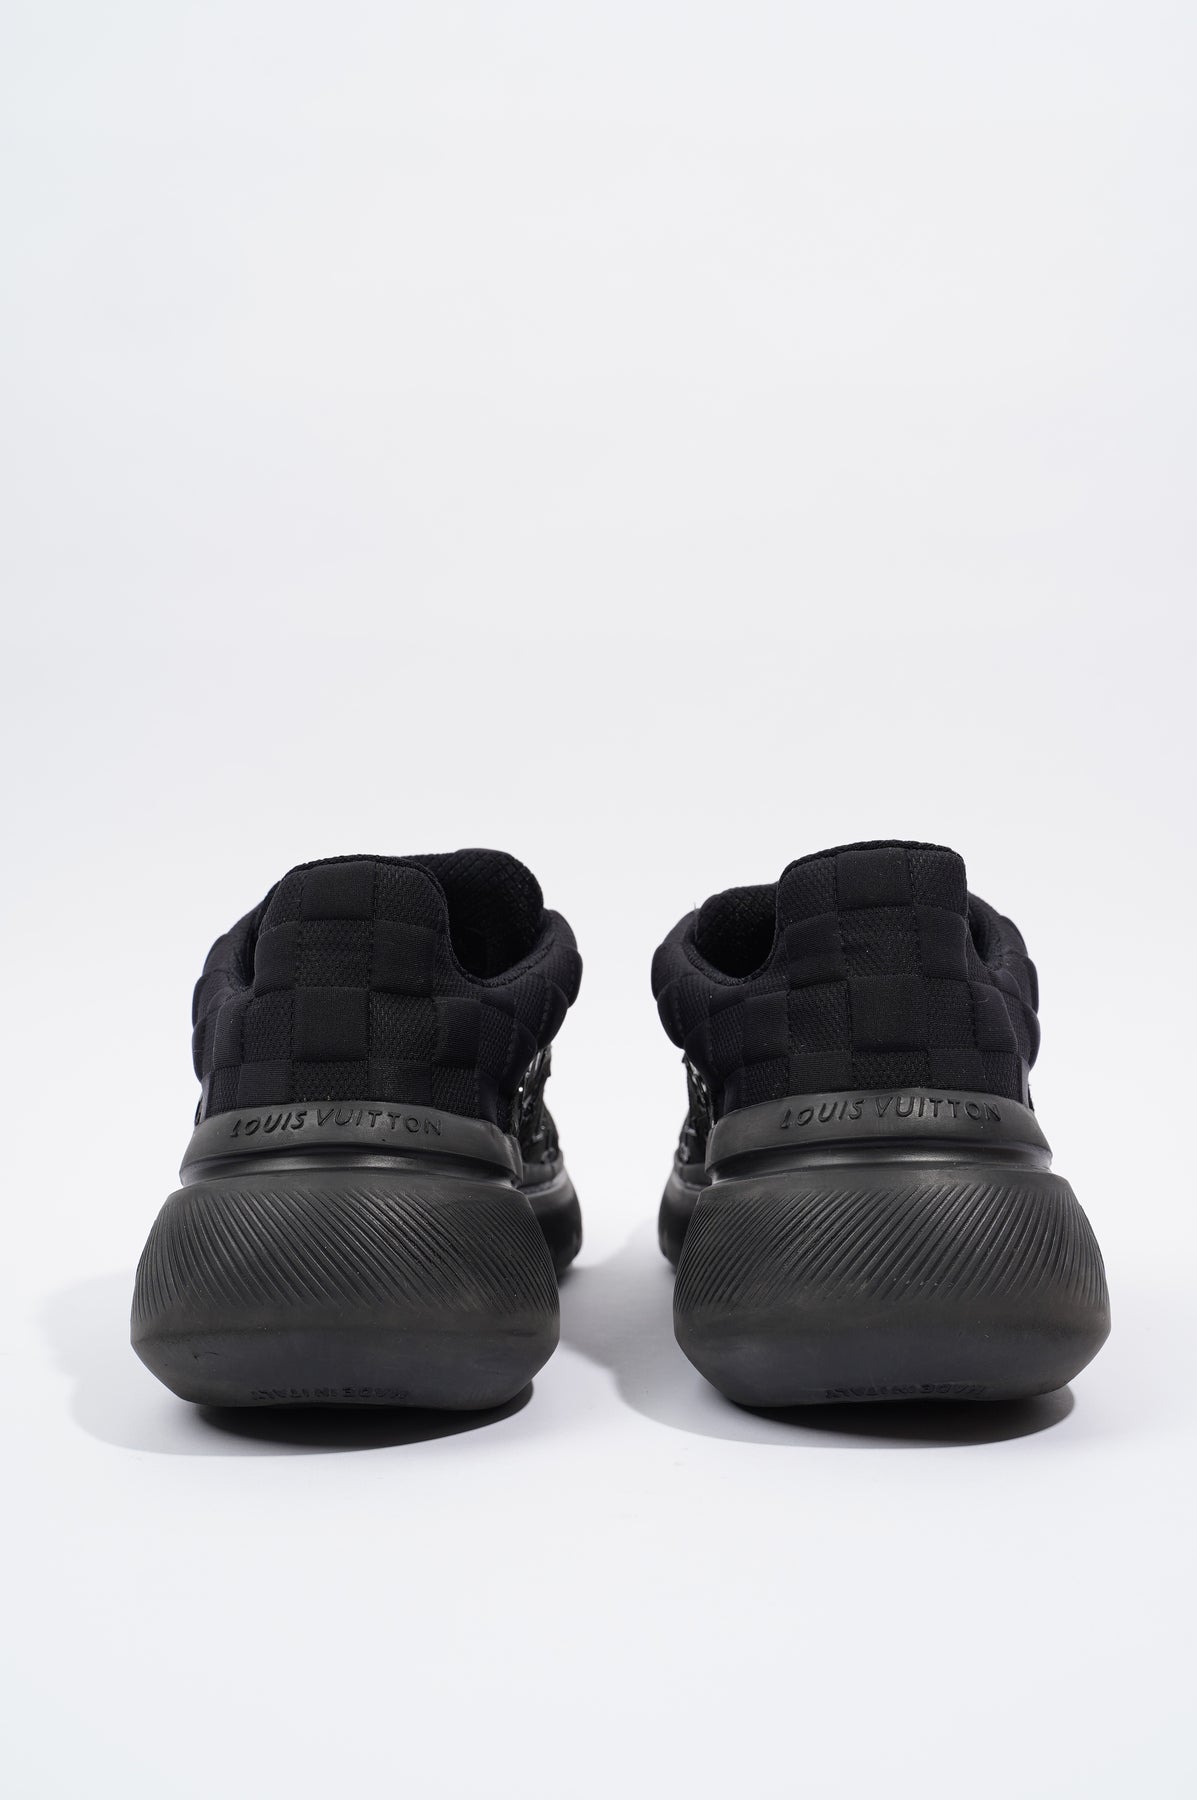 Louis Vuitton Show Up Sneaker BLACK. Size 06.0